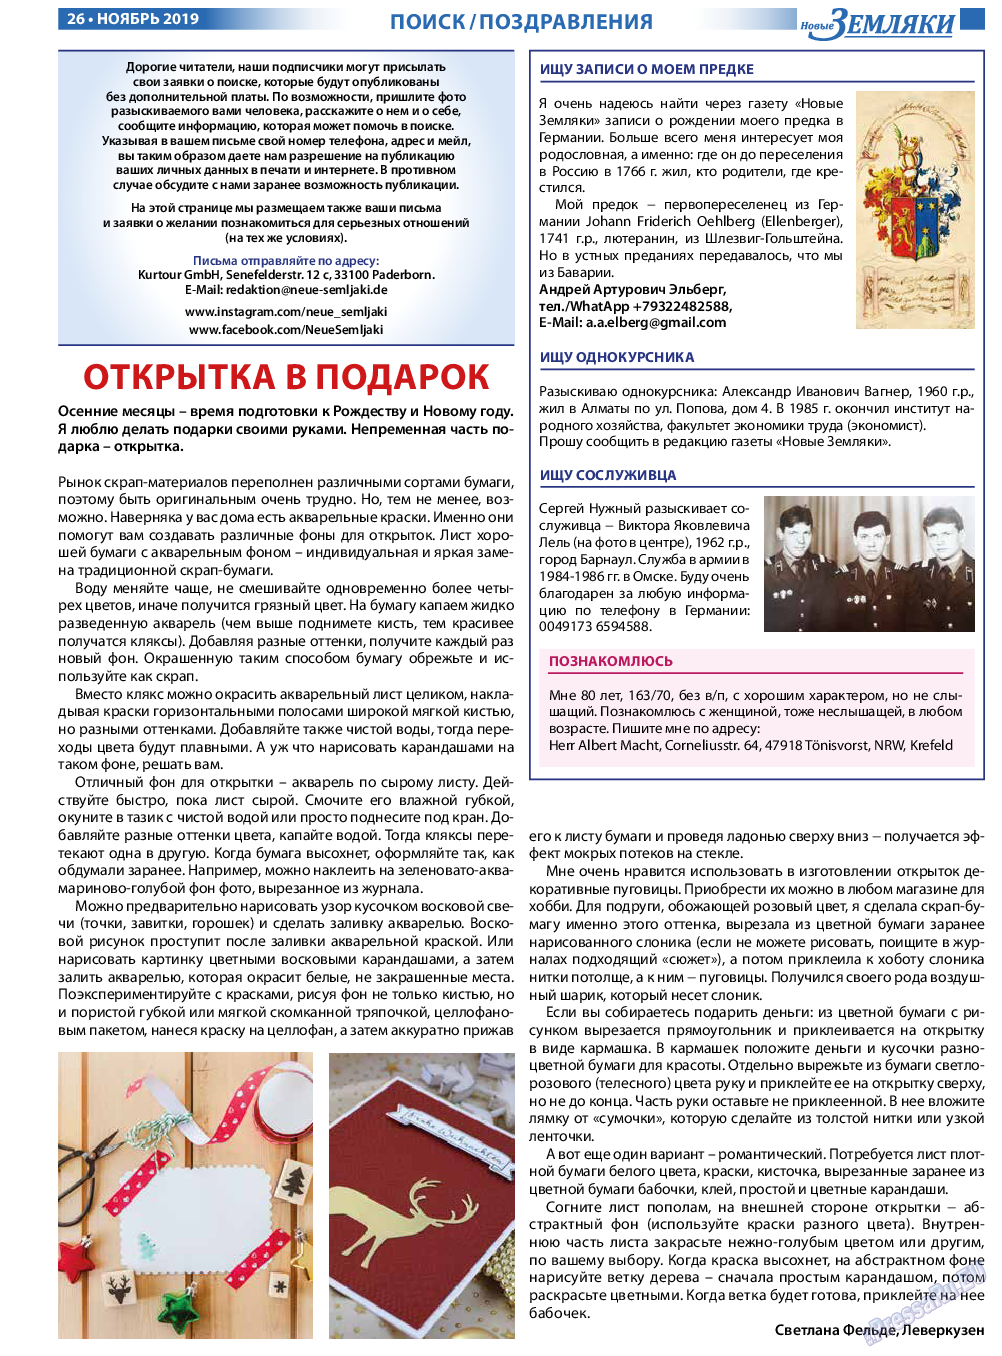 Новые Земляки (газета). 2019 год, номер 11, стр. 26